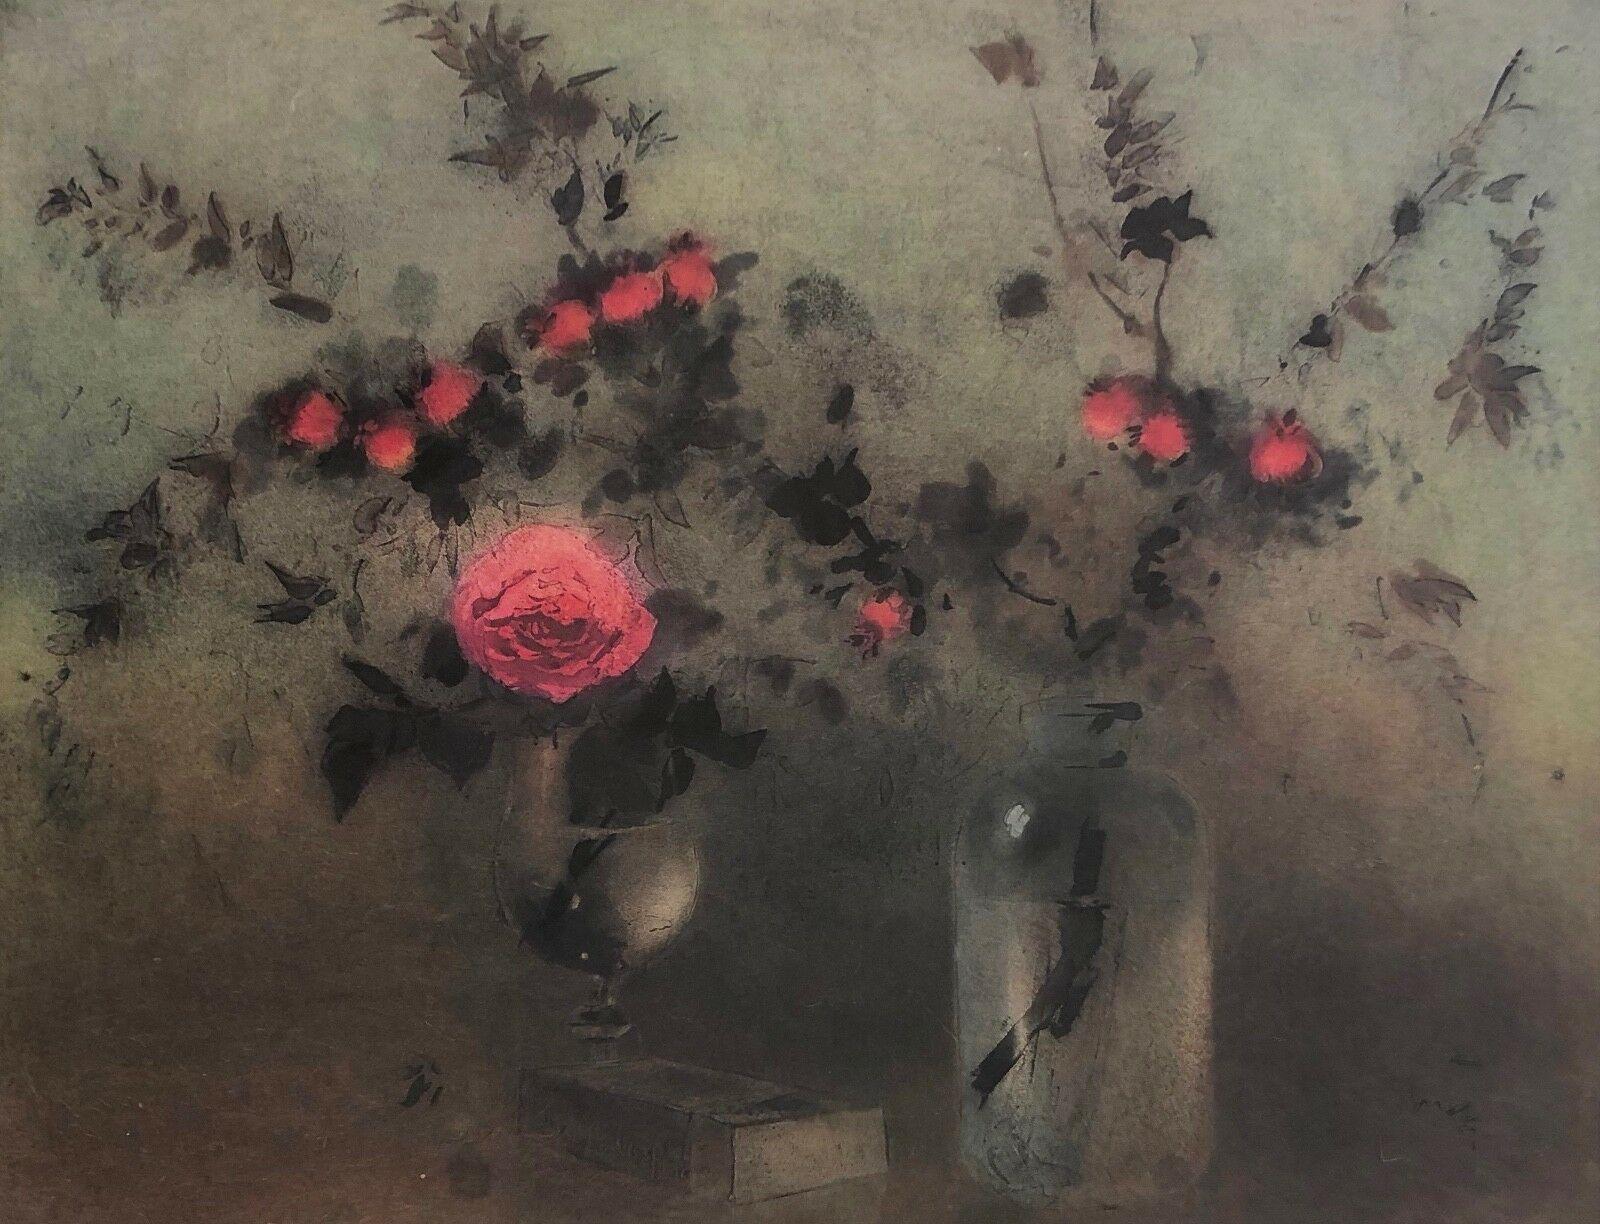 Kaiko Moti Landscape Print - Roses